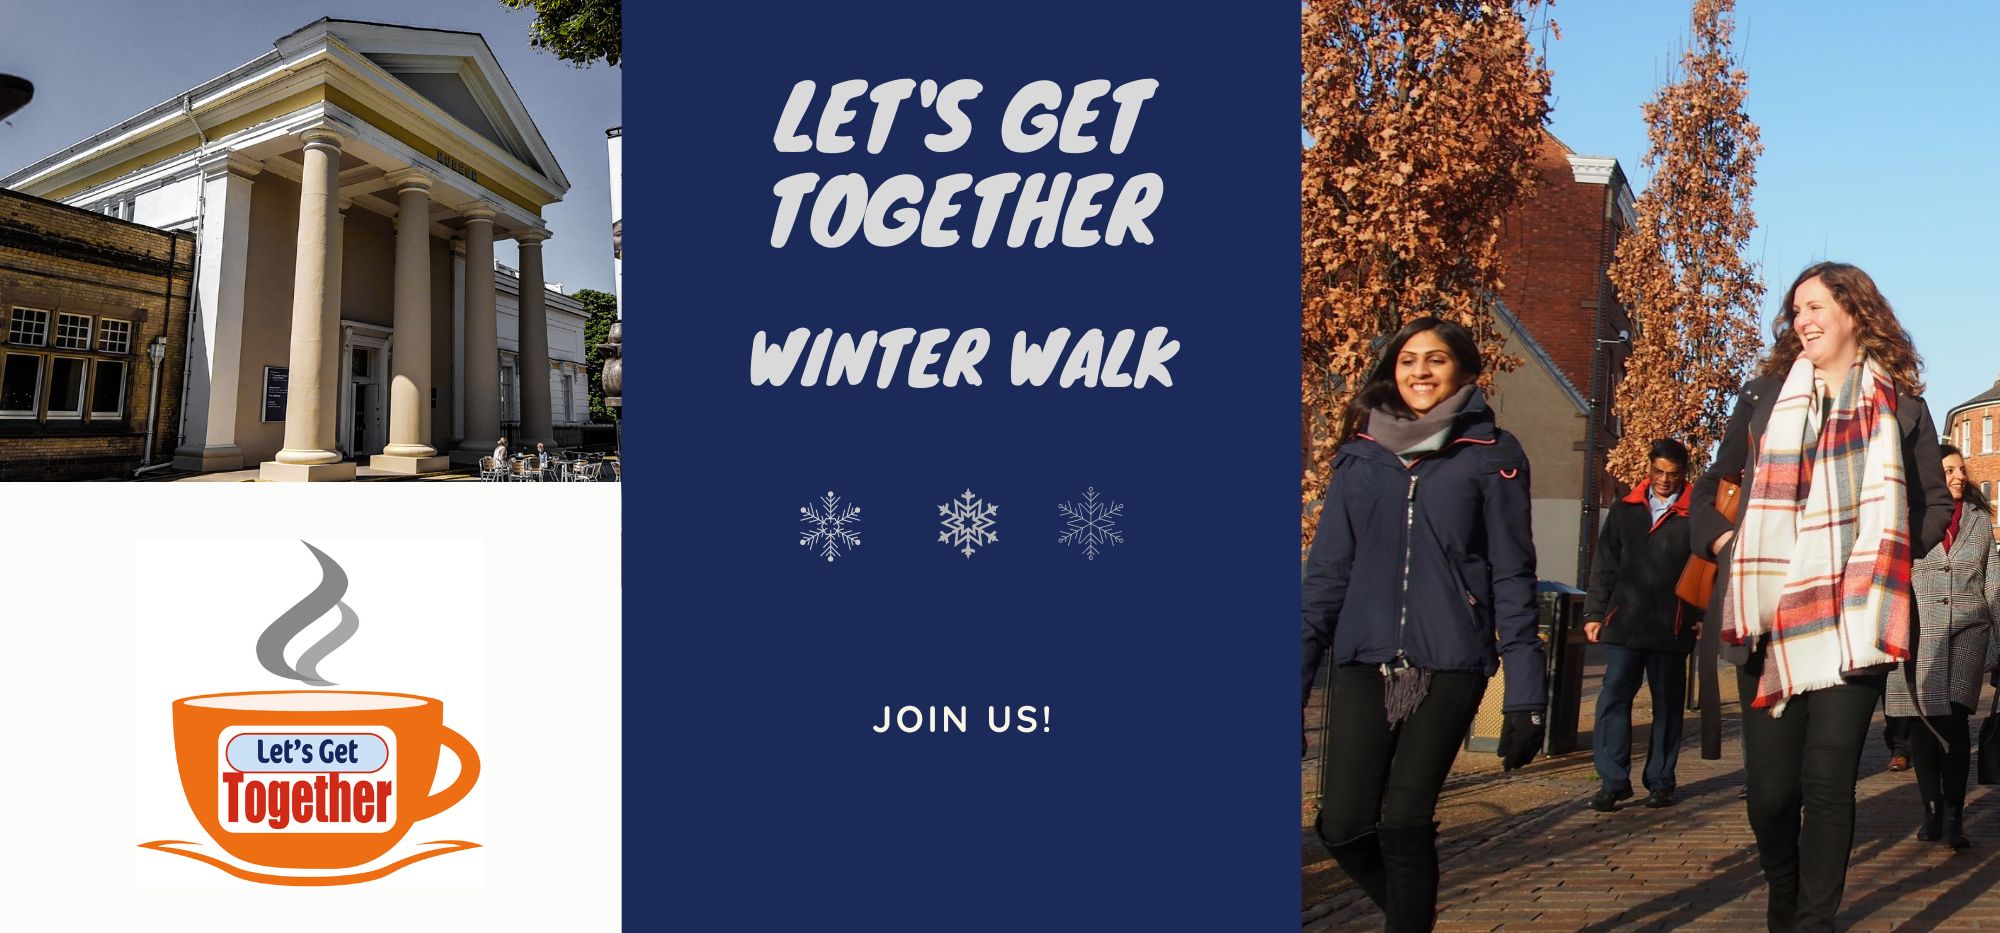 Let's Get Together - Winter Walk